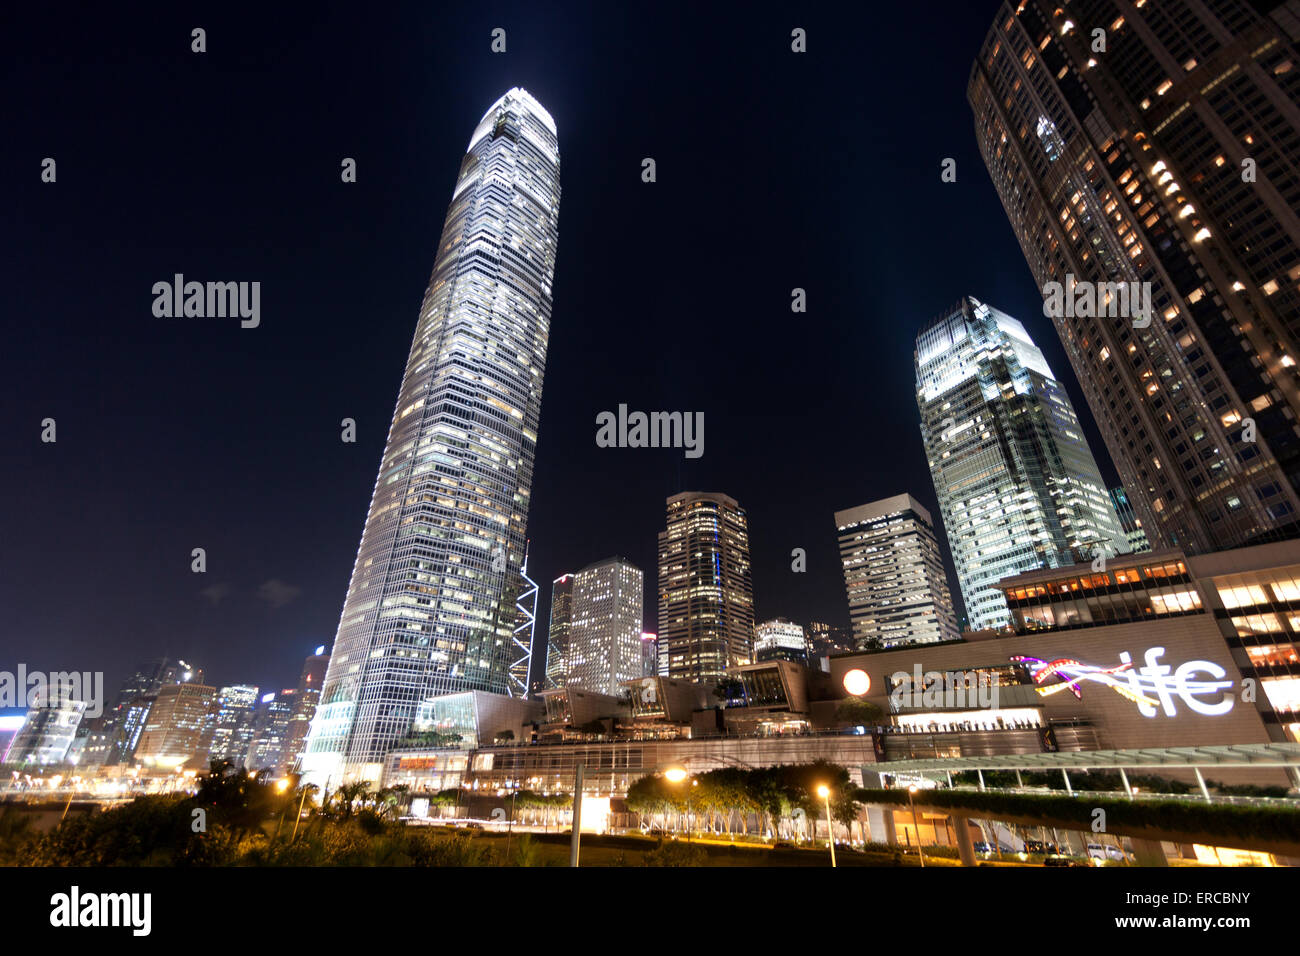 Hong Kong IFC building at night Stock Photo